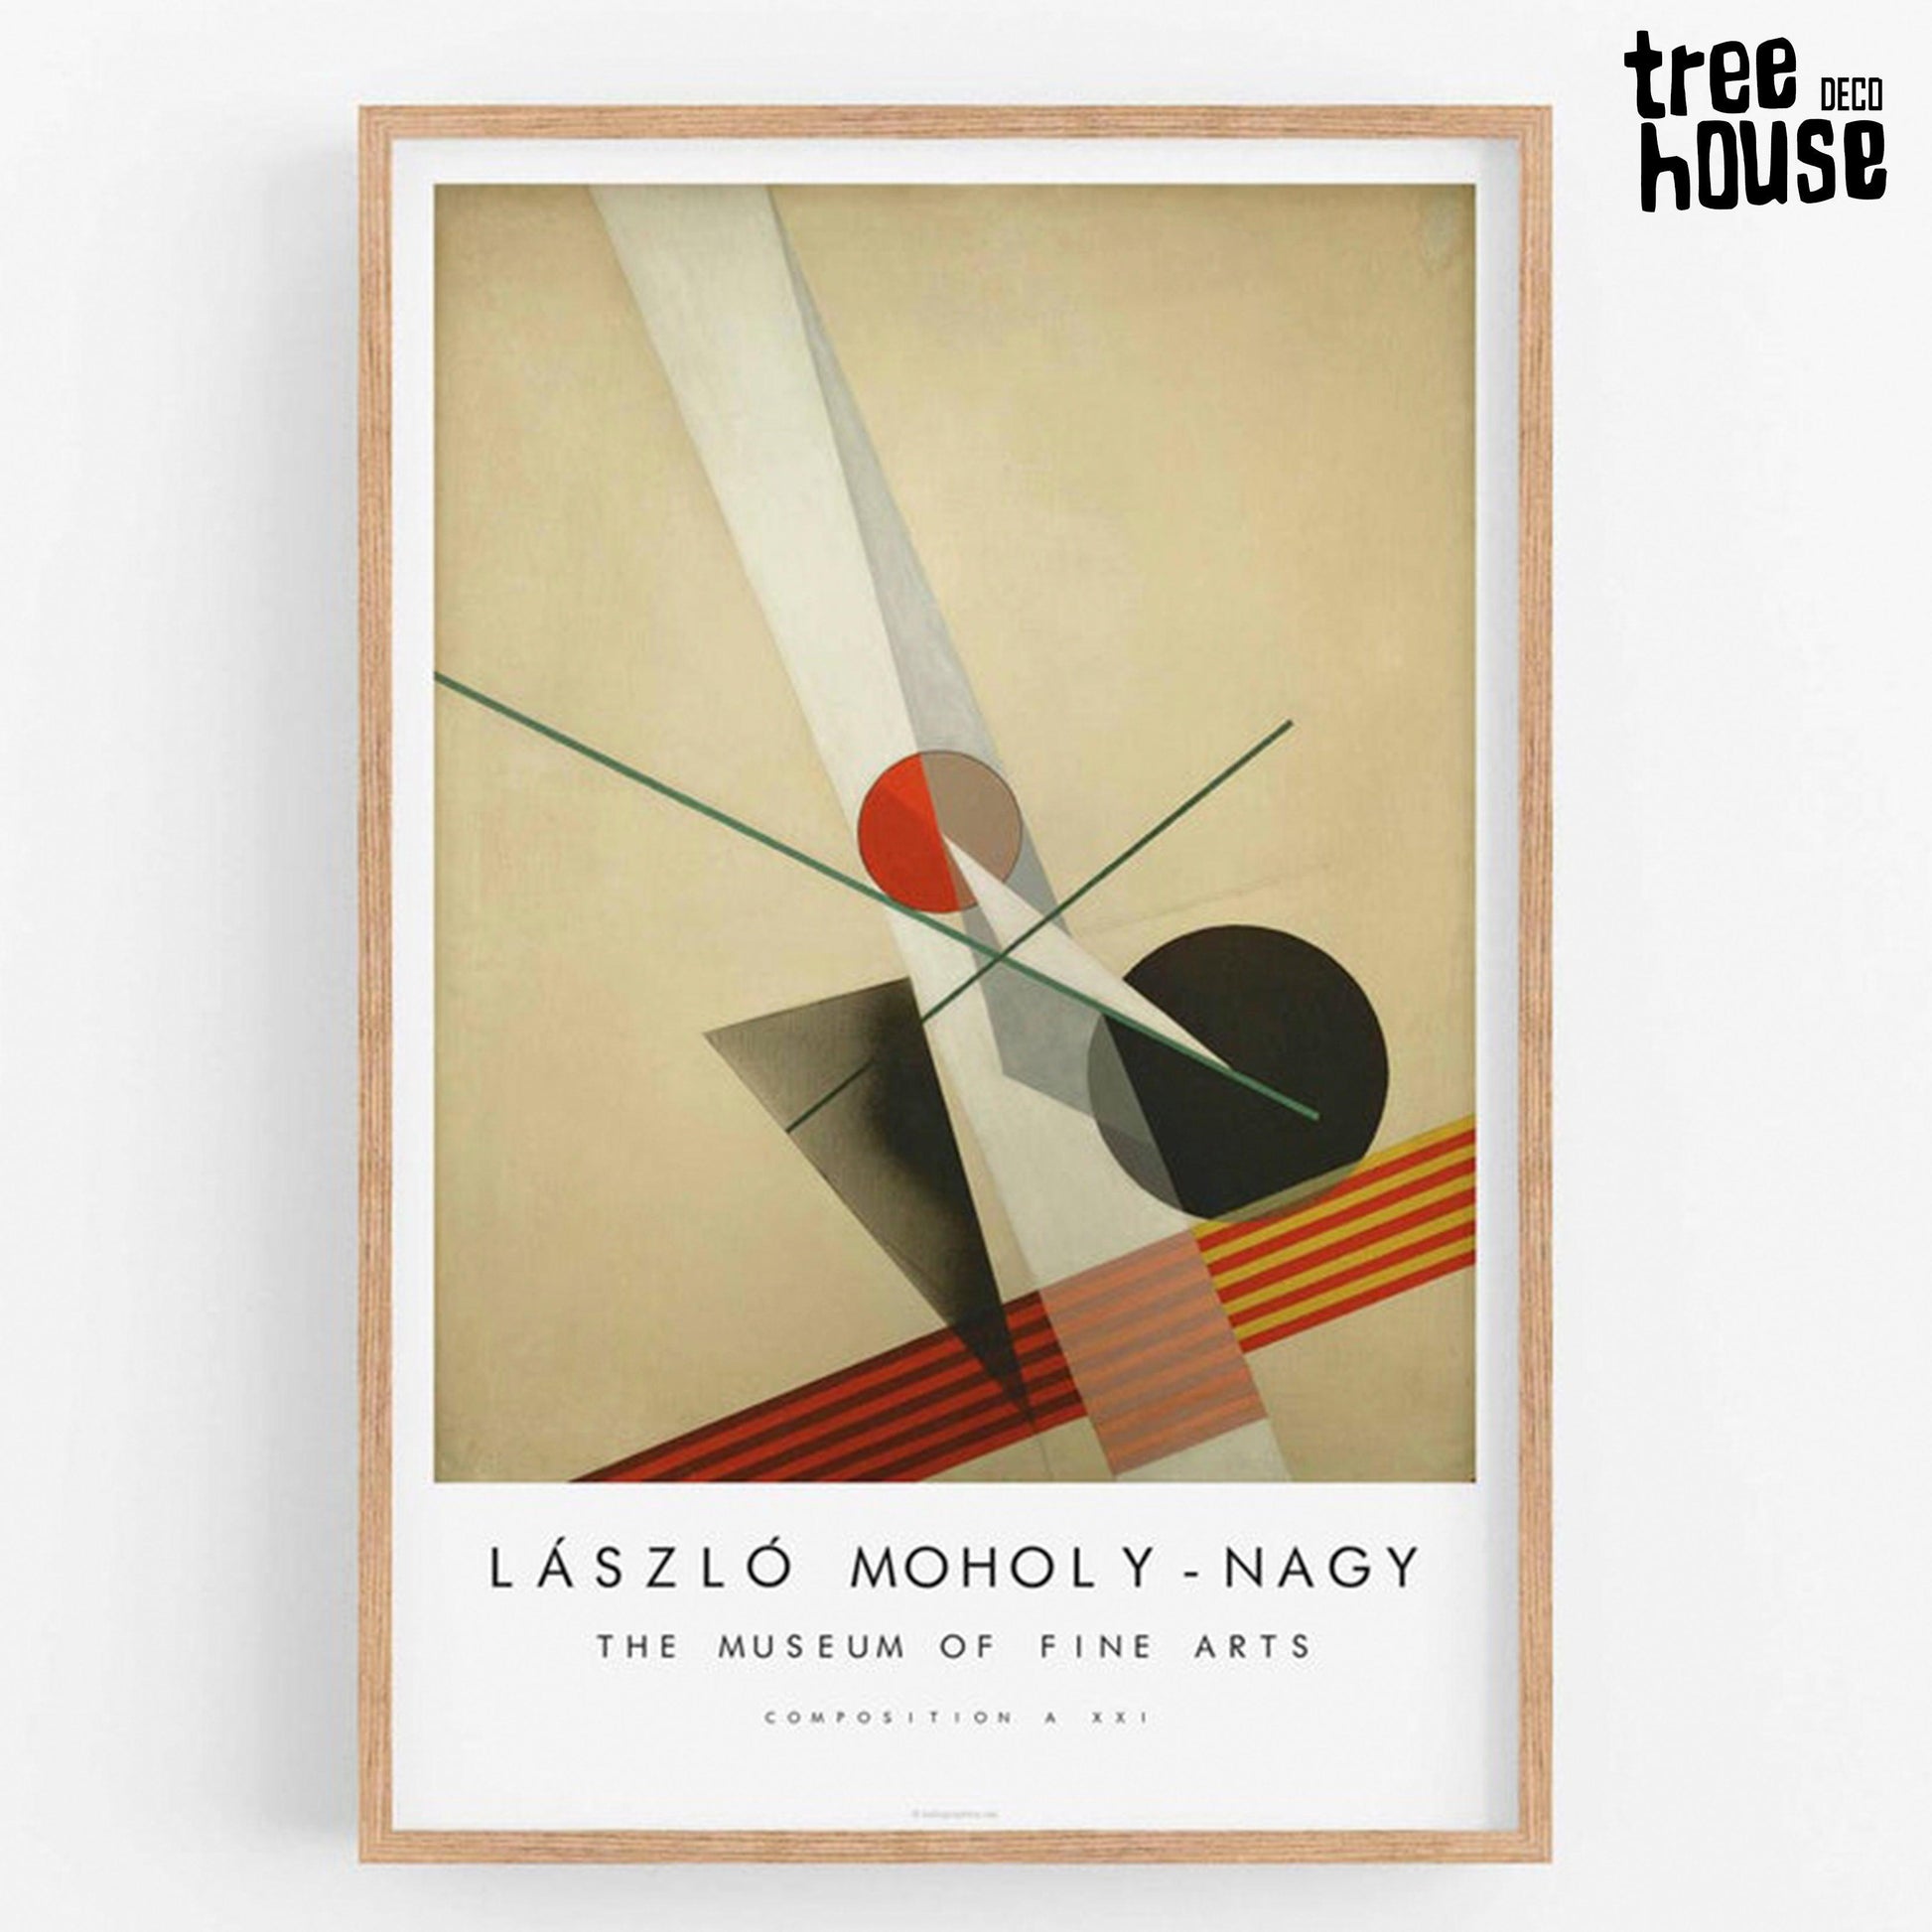 Cuadro Decorativo de Laszlo Moholy Nagy - Tree House Deco